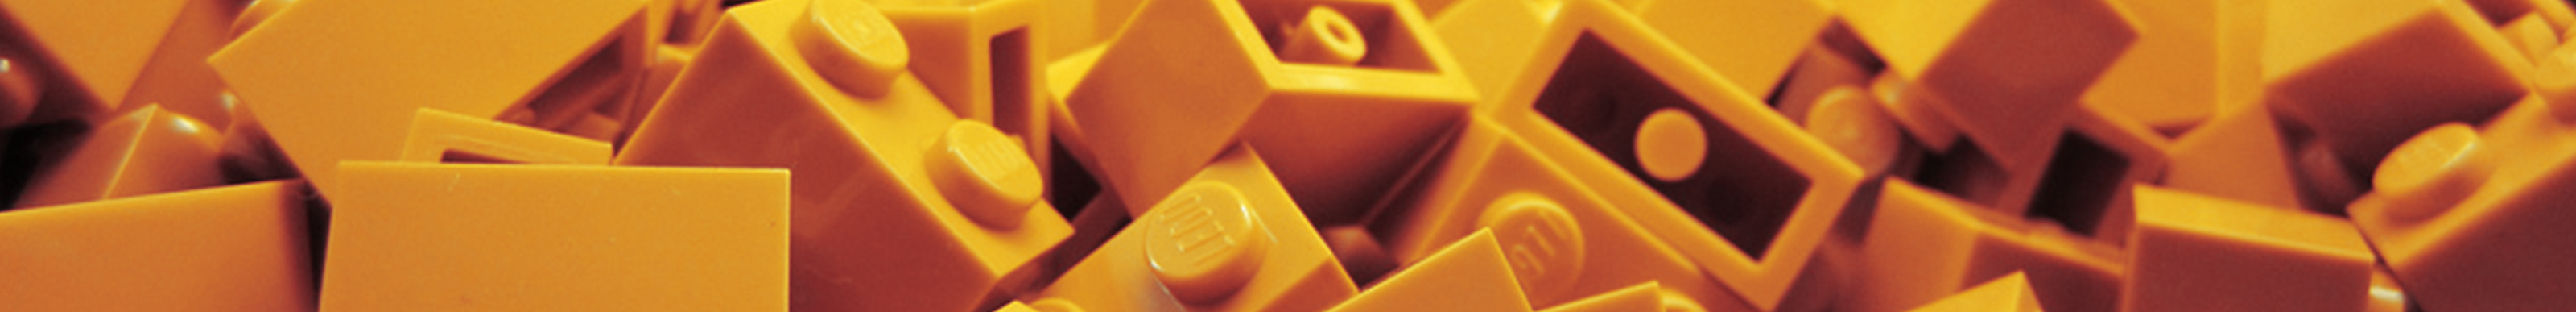 Rogério Lego's profile banner